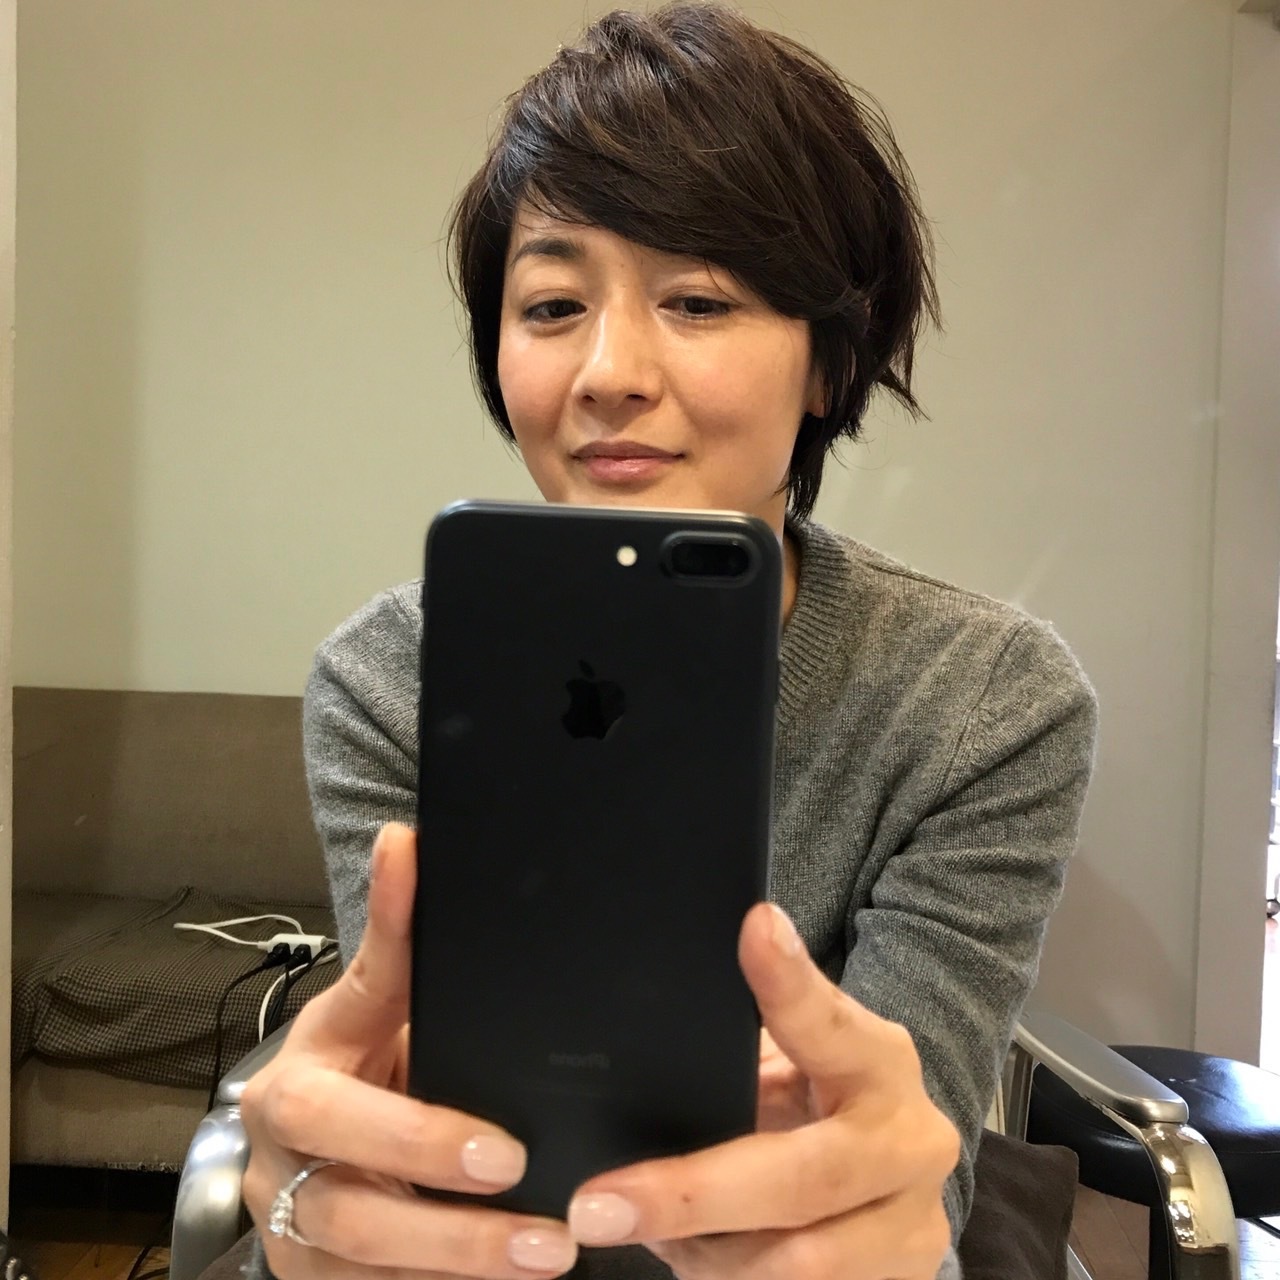 富岡佳子の髪型21選 人気ランキング22最新版 歳を重ねても美しい Rank1 ランク1 人気ランキングまとめサイト 国内最大級